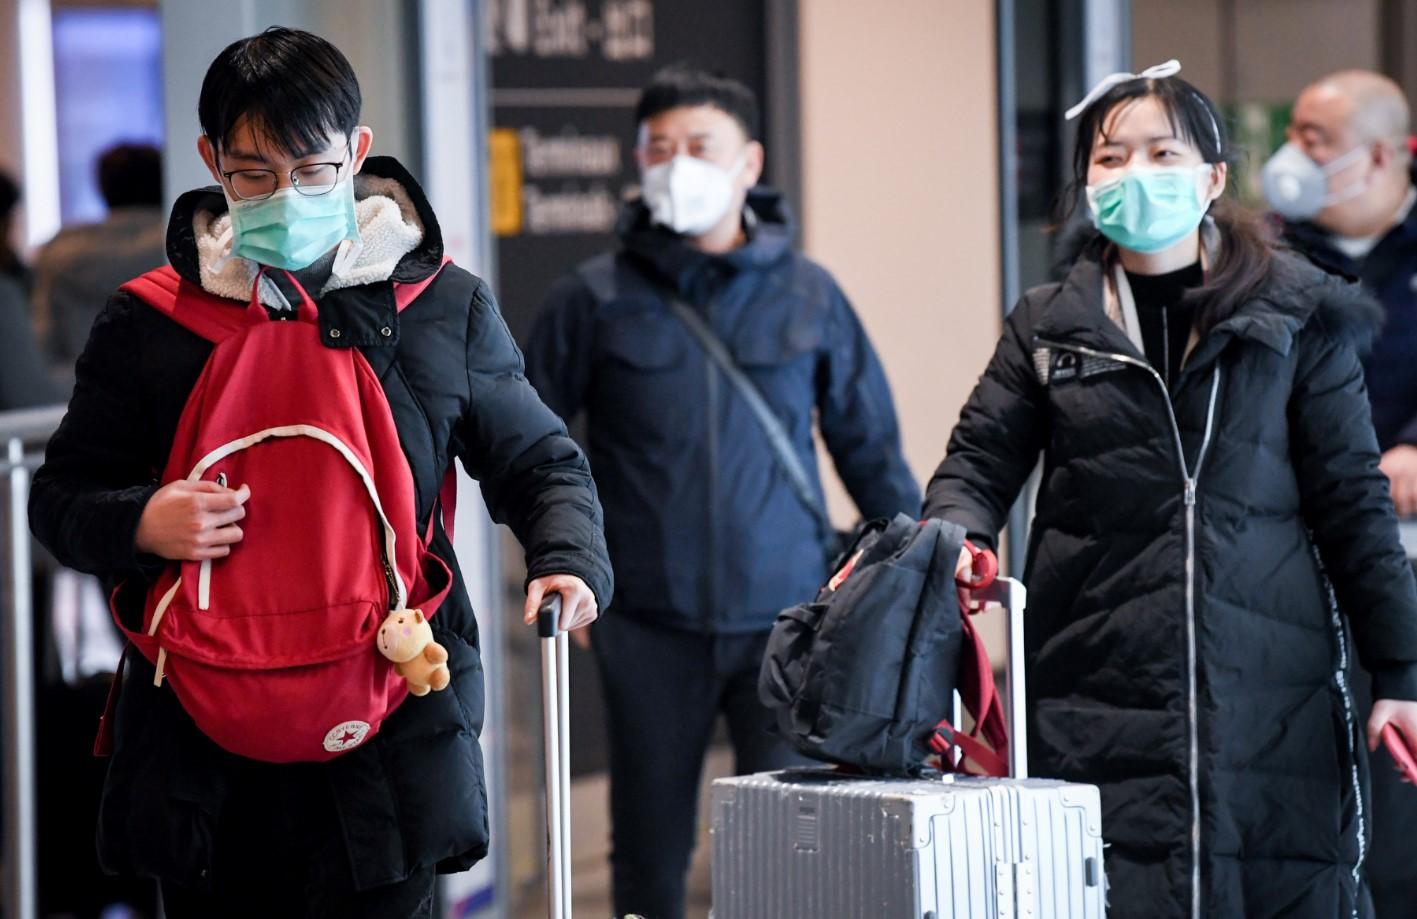 Od koronavirusa u Kini umrlo 56 osoba, nekoliko hiljada zaraženo, predsjednik priznao da je "situacija teška"